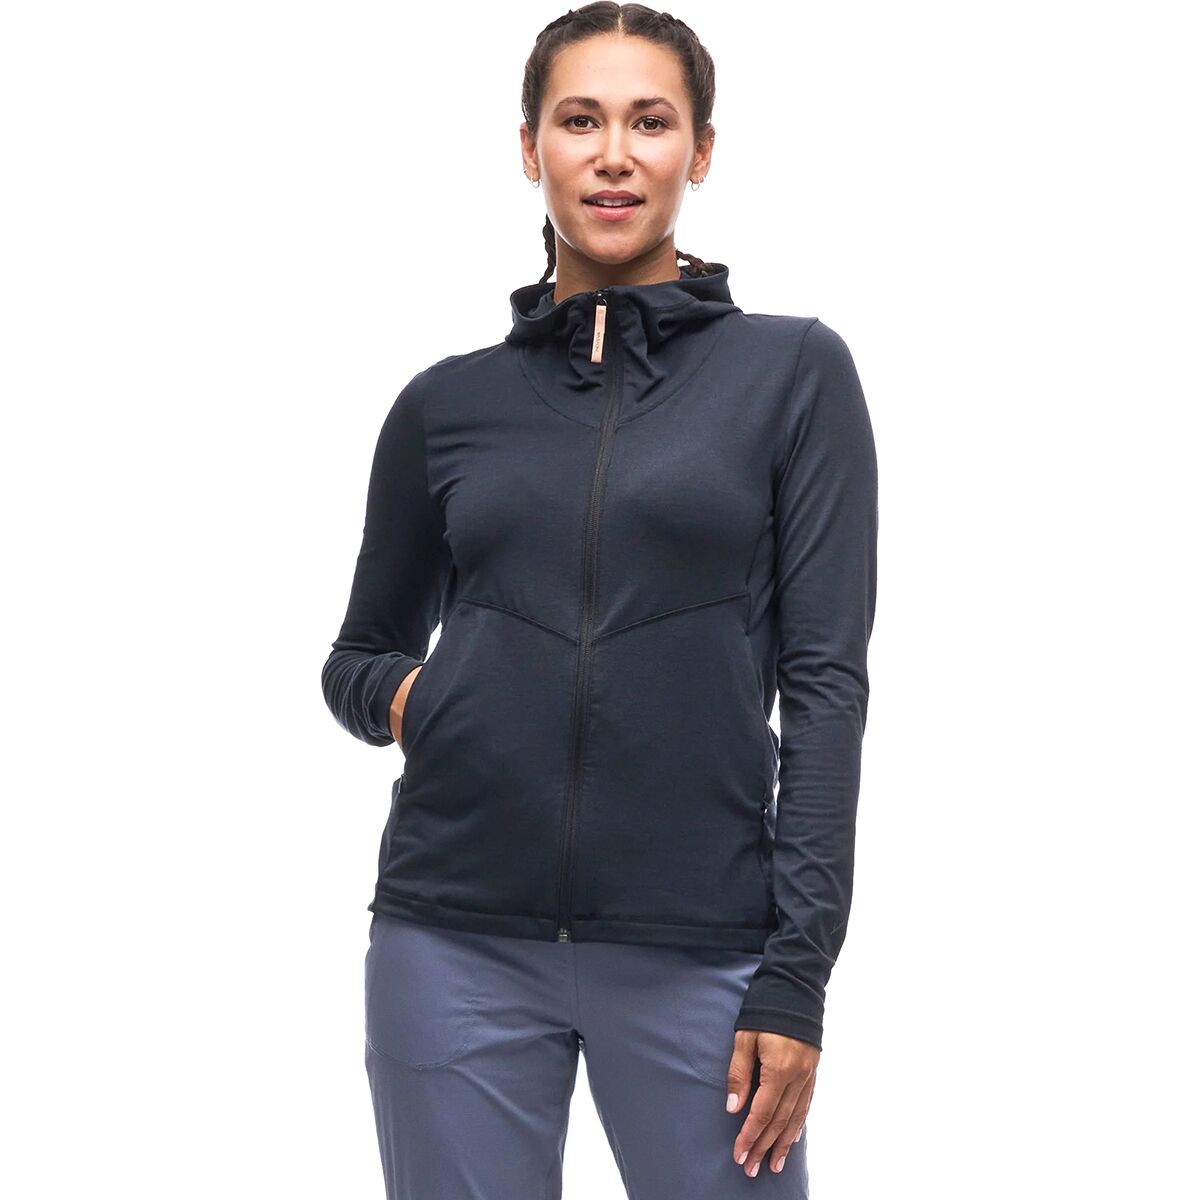 Indyeva Secco Full-Zip Jacket - Women's